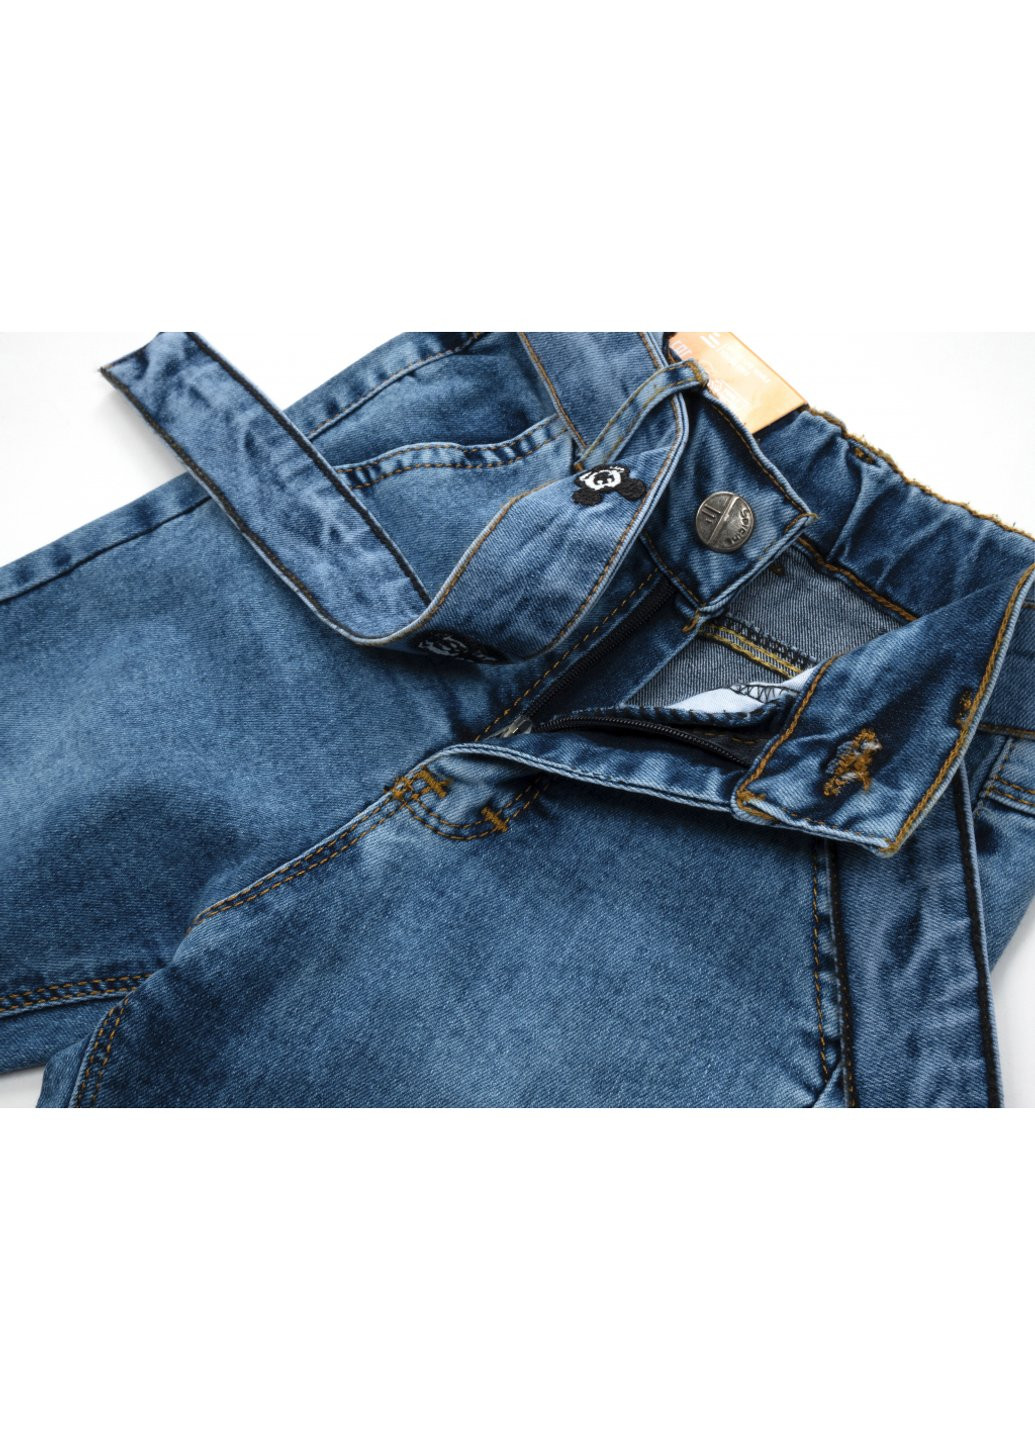 Голубые демисезонные джинсы с поясом (58162-104g-blue) Sercino